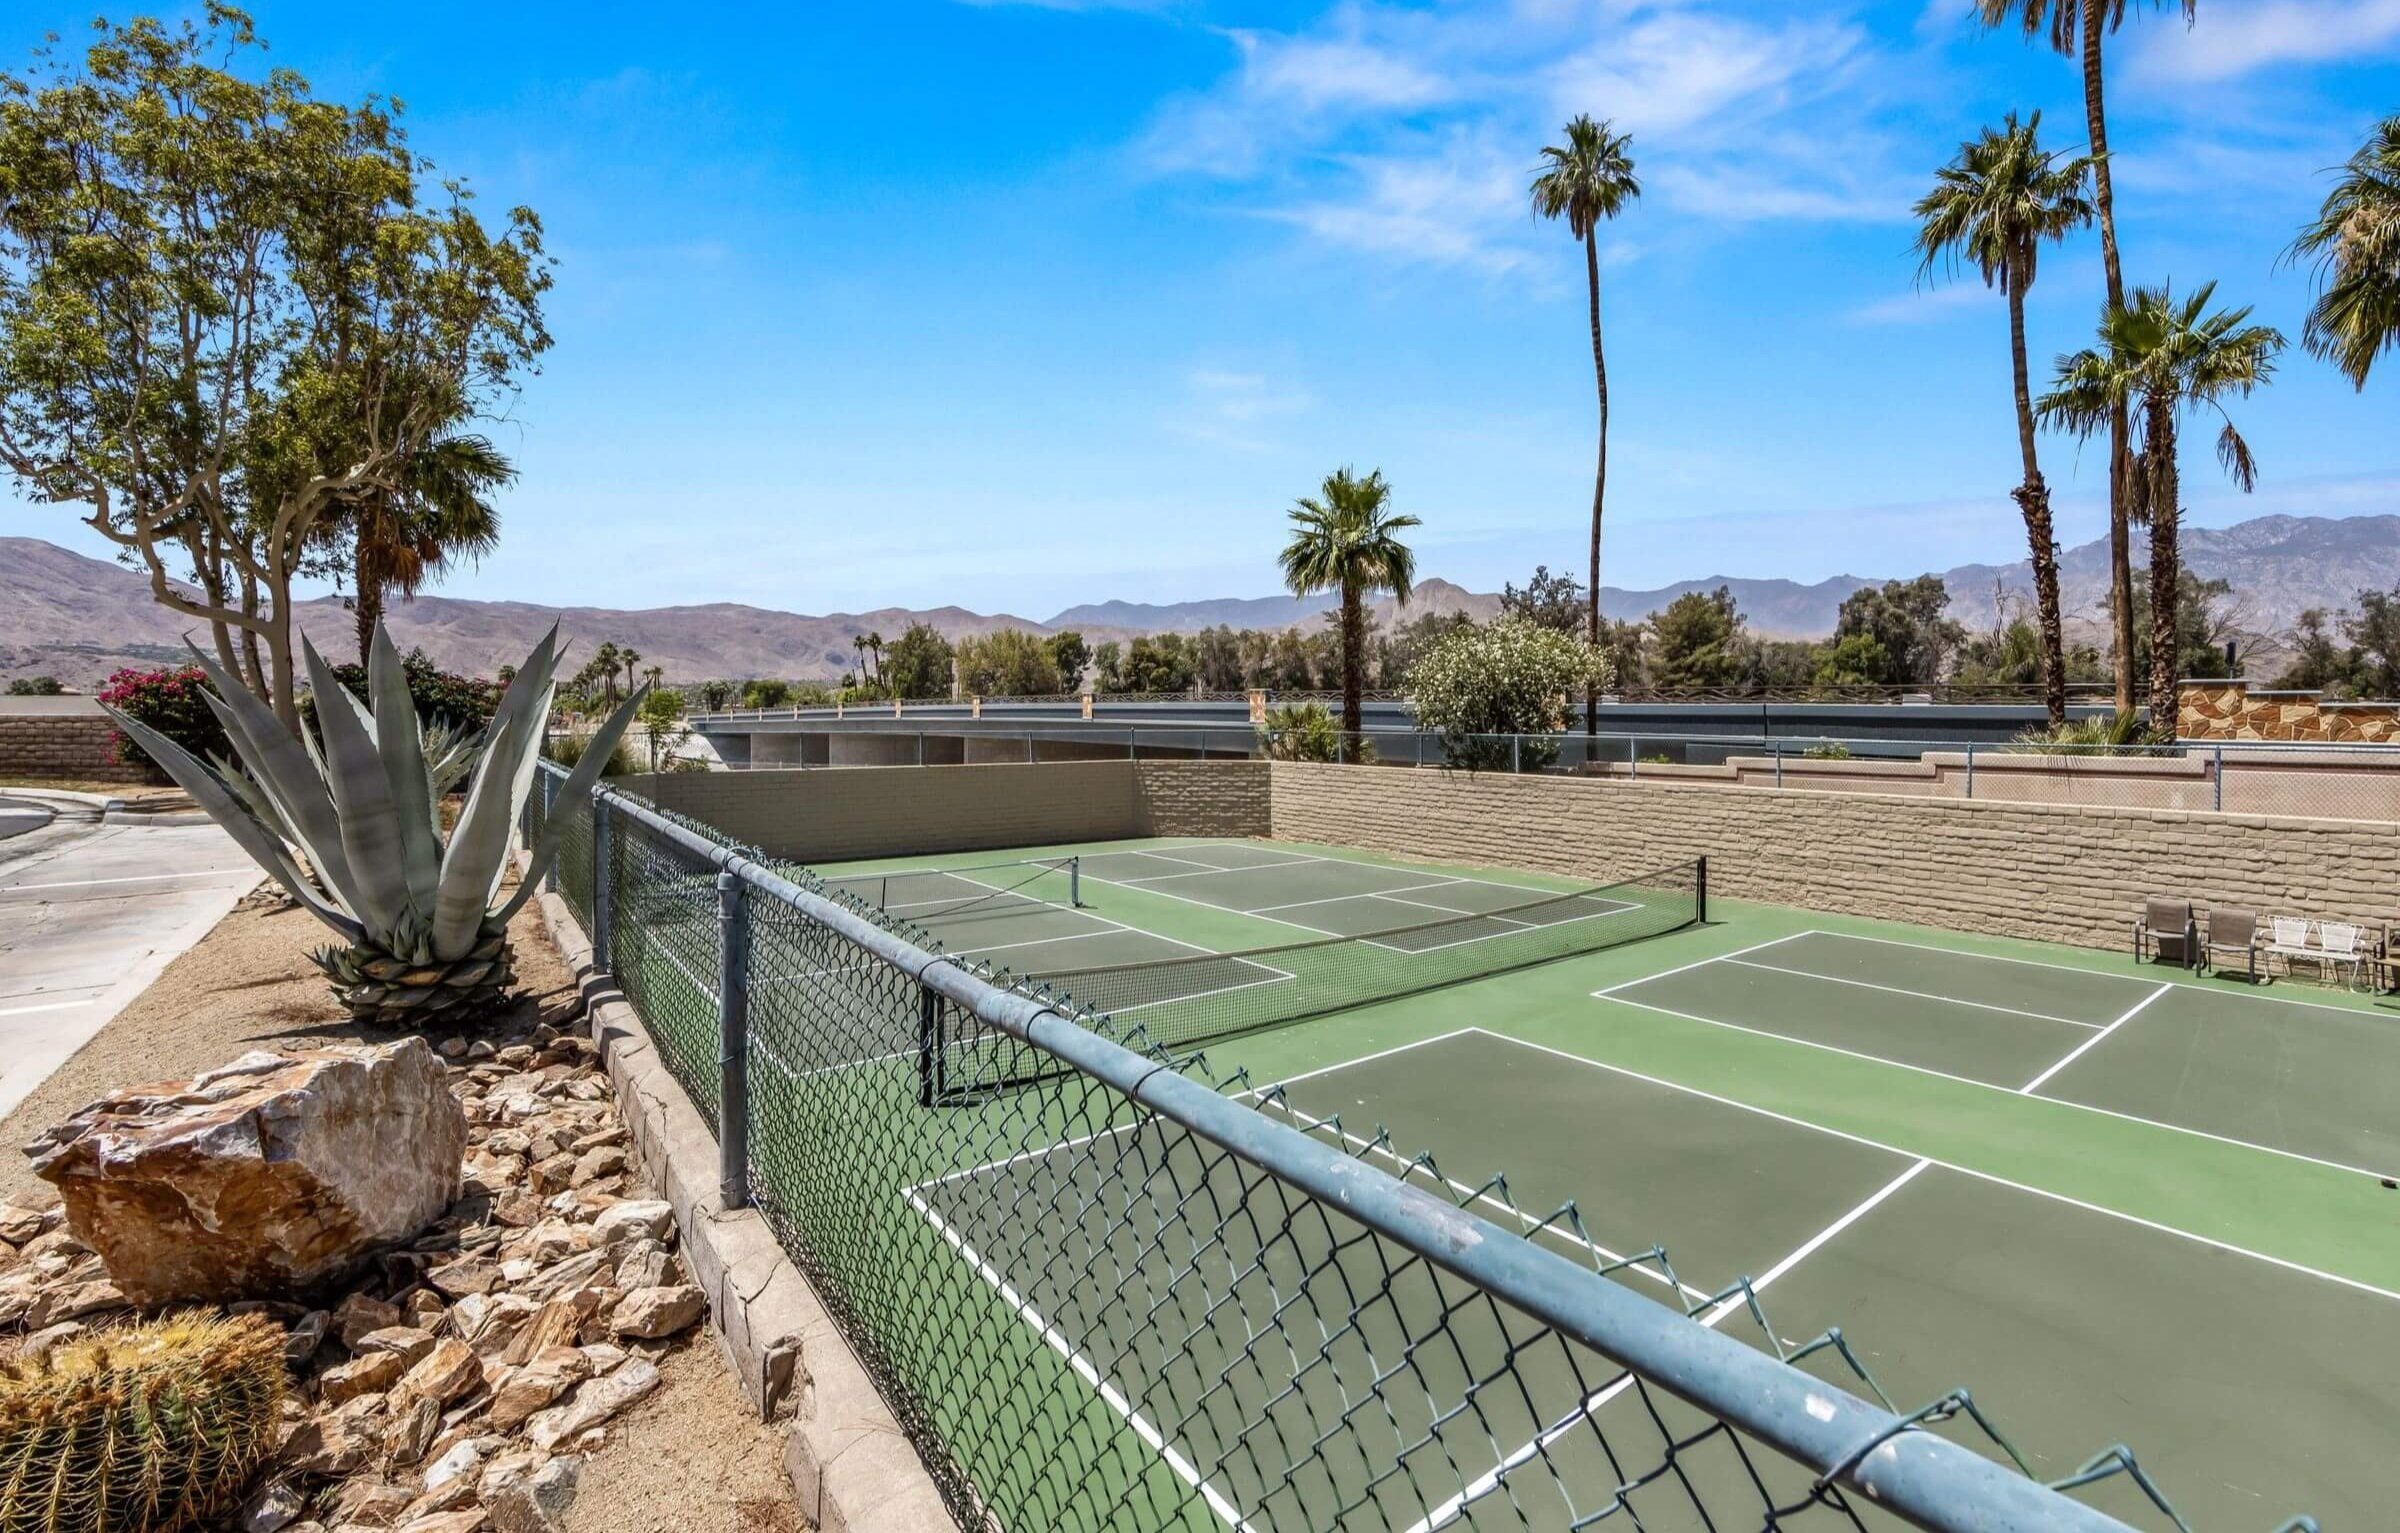 Canyon Shores tennis